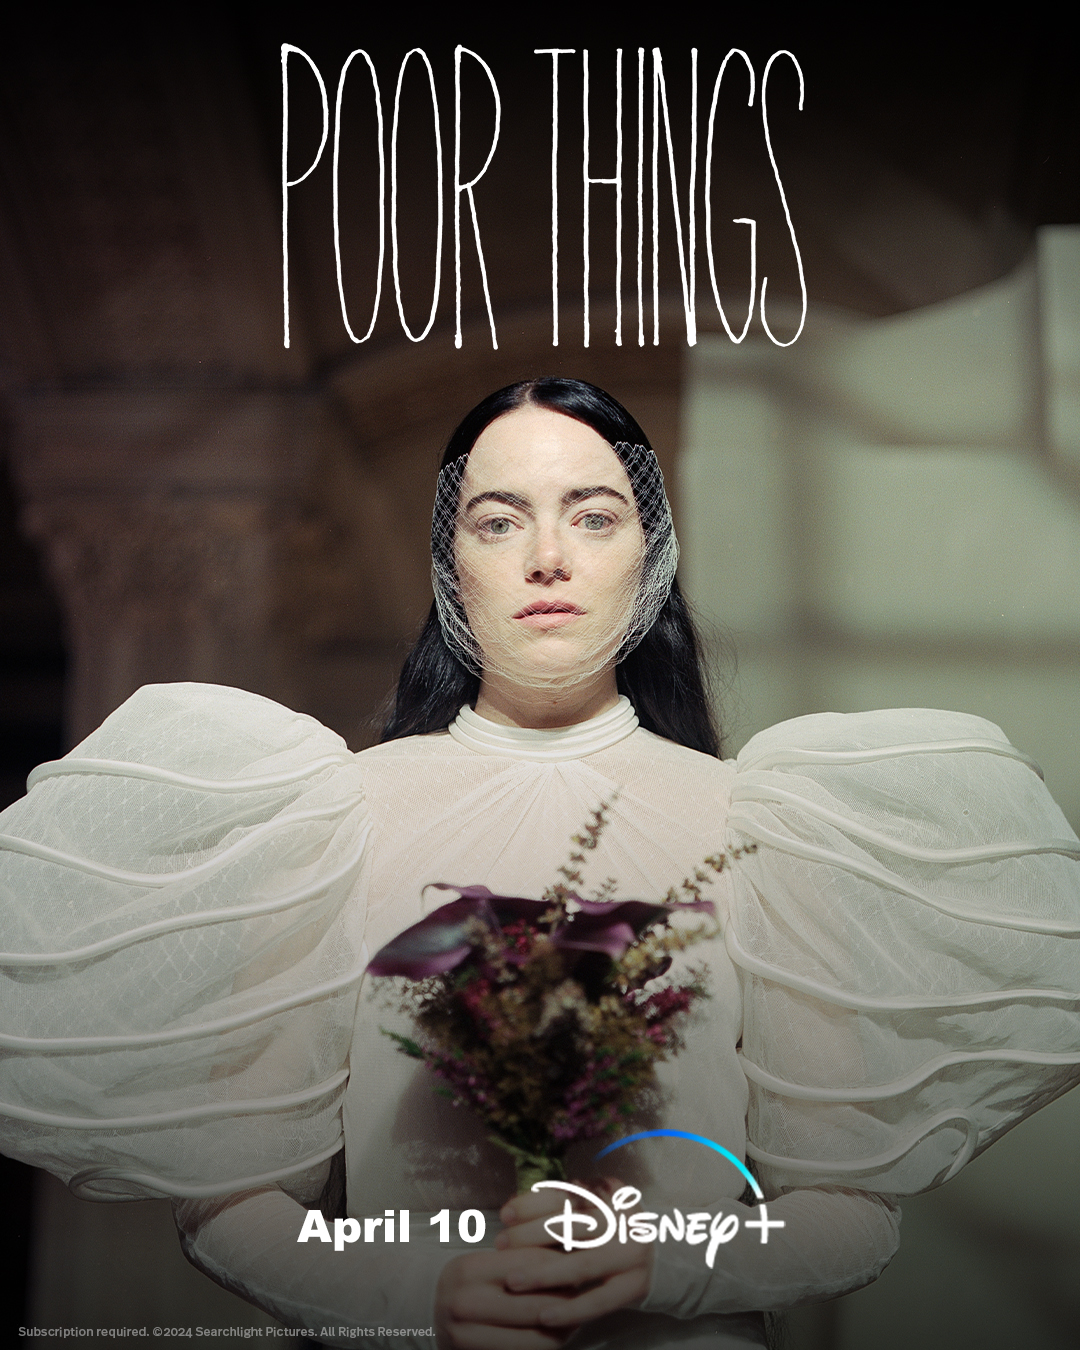 Academy Award Winner “POOR THINGS”  Now Streaming on Disney+